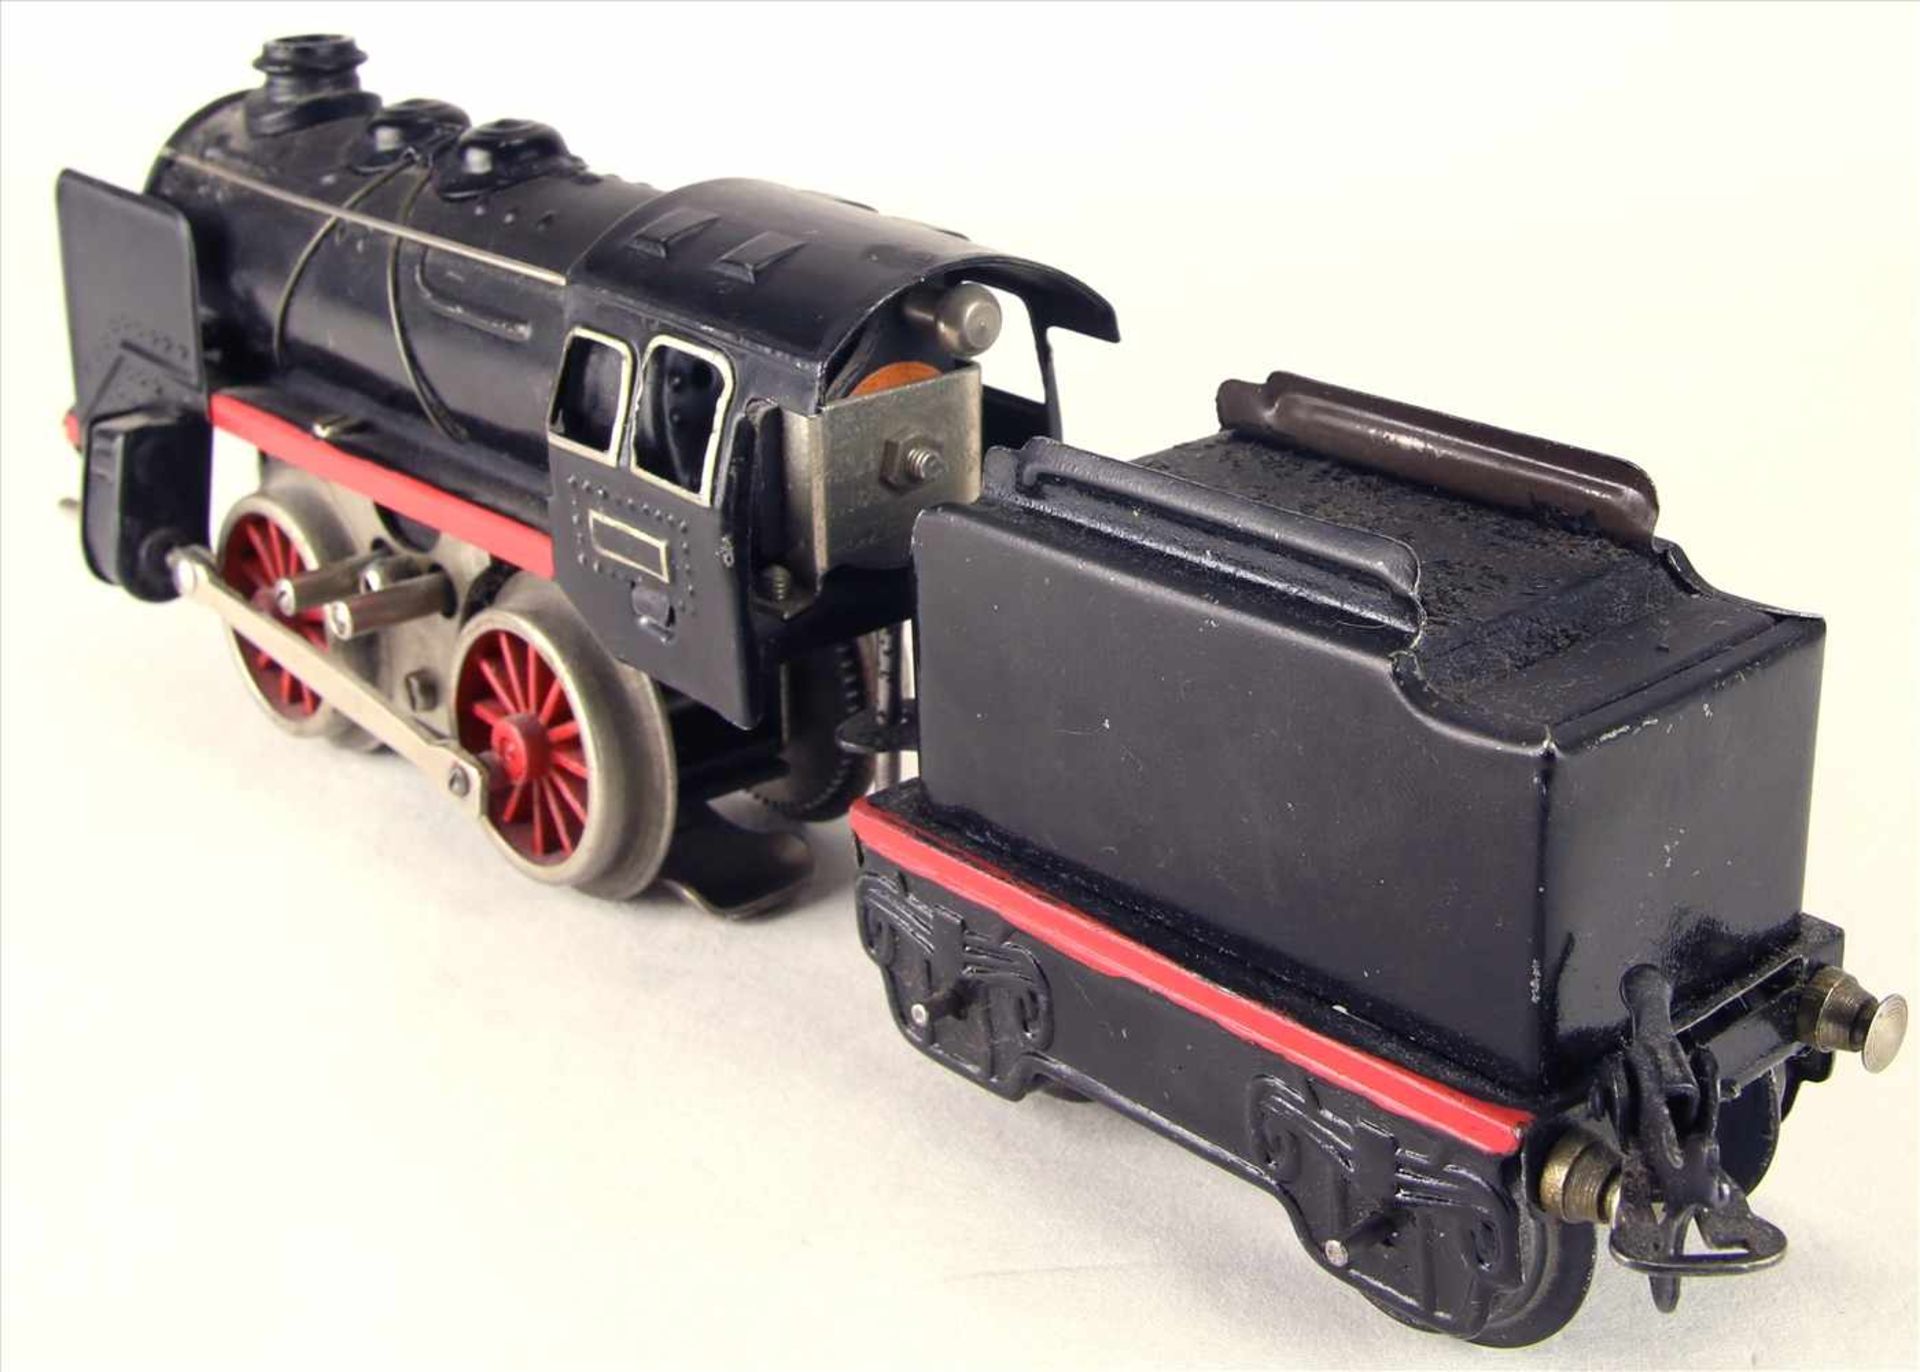 Dampflokomotive Spur 0Karl Bub späte 1940-er Jahre. Dampflok mit Tender. Elektroantrieb. - Image 4 of 5